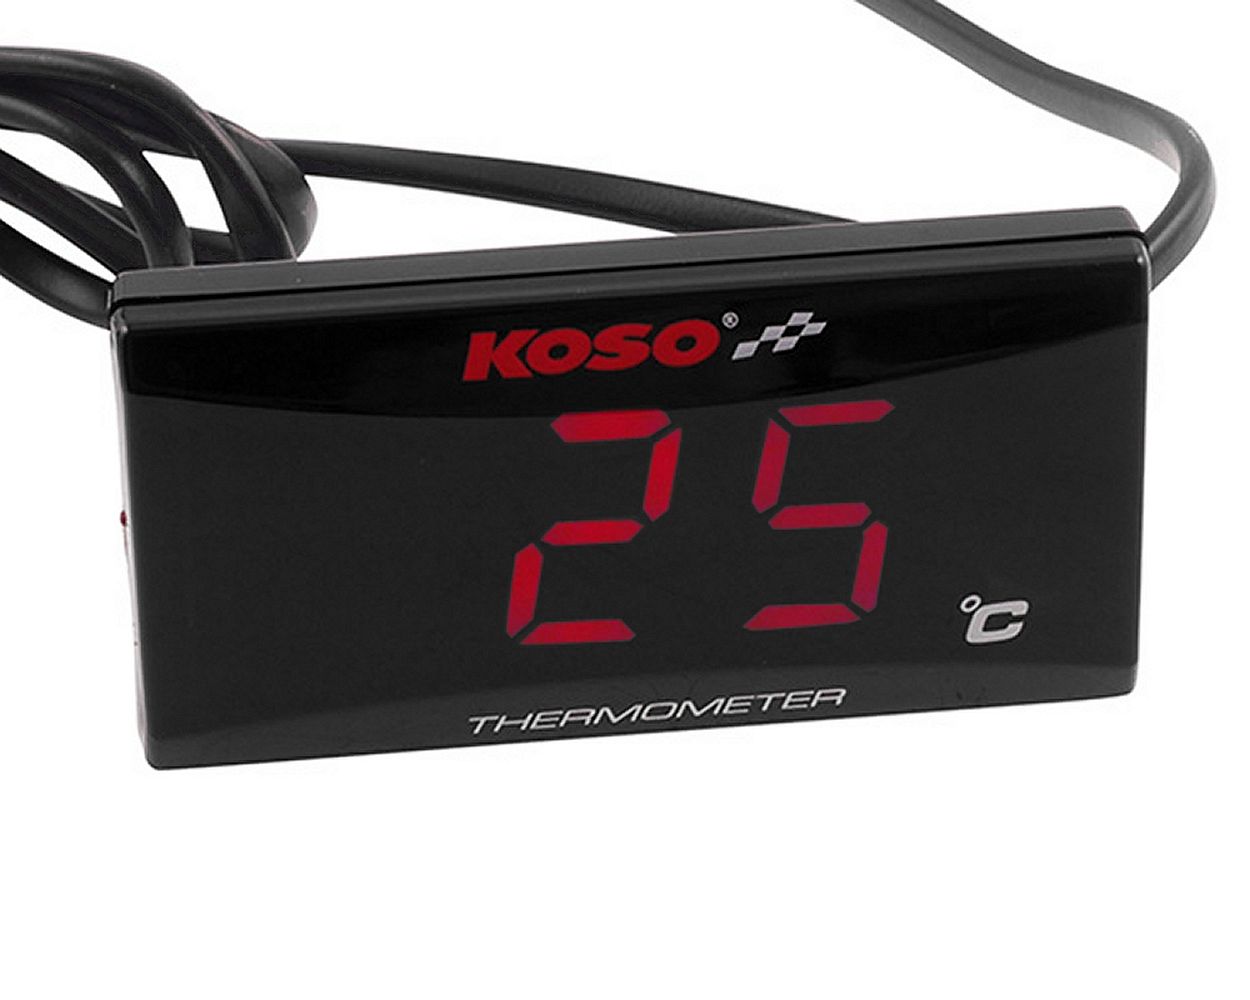 Temperaturanzeige Digital Roller Koso -  Universal-Motorrad-Digital-Thermometer Instrument Wassertemperatur- Temperaturmesser Ersatz Für Rennroller(Rote Hintergrundbeleuchtung) :  : Auto & Motorrad